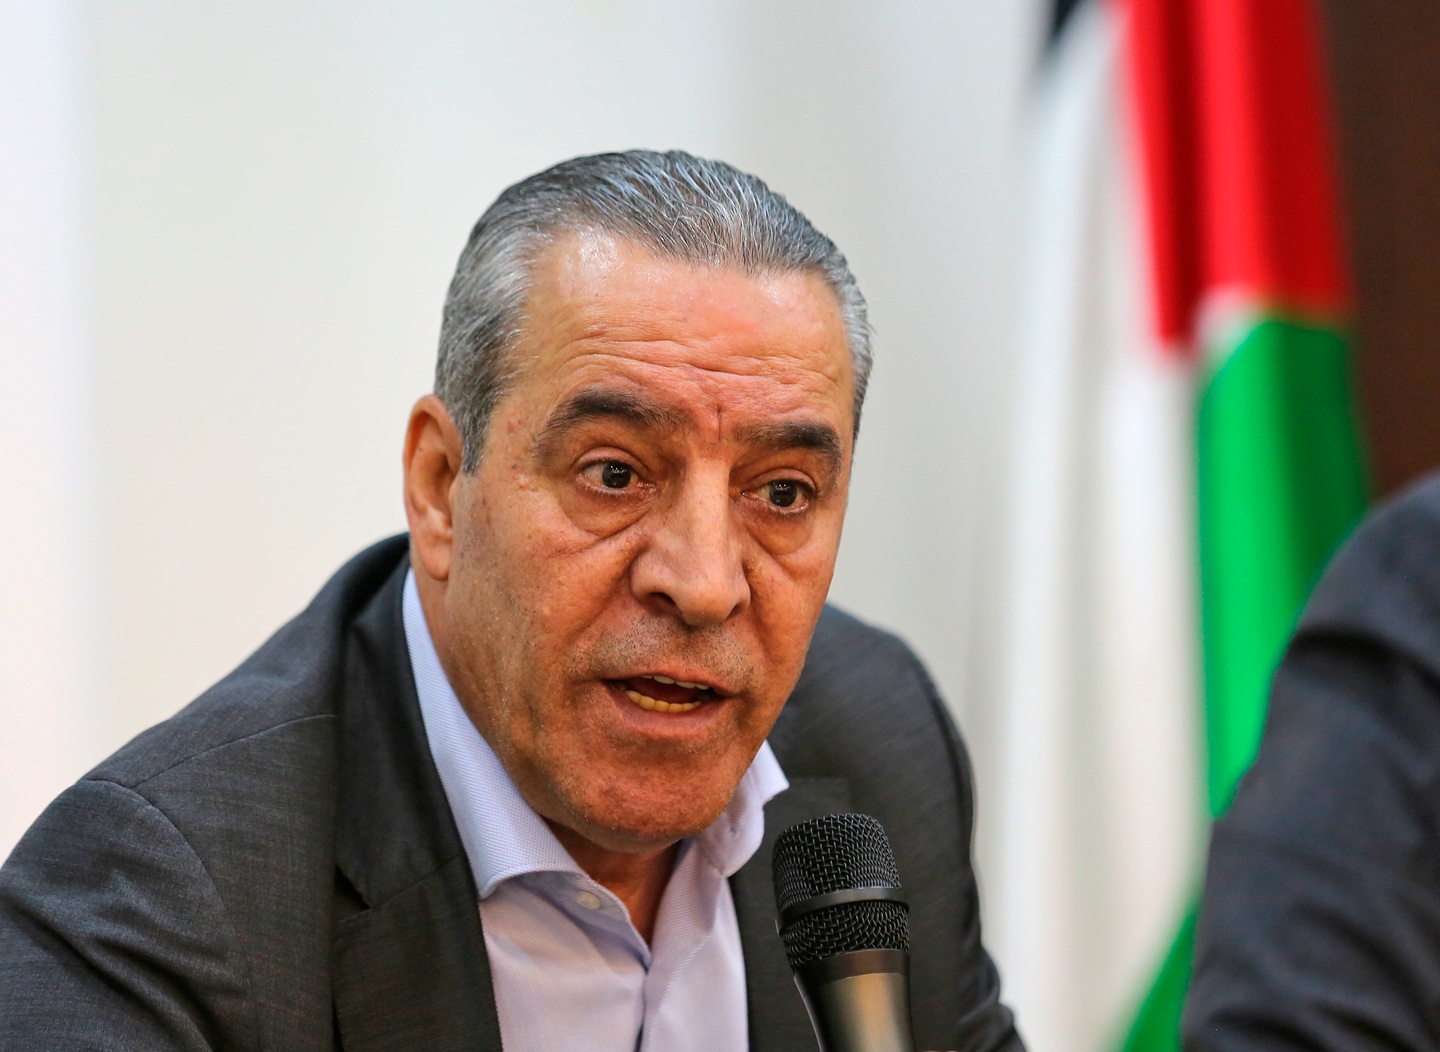 Abu Rudeineh: Prisoners in Israeli jails top priority for President Abbas